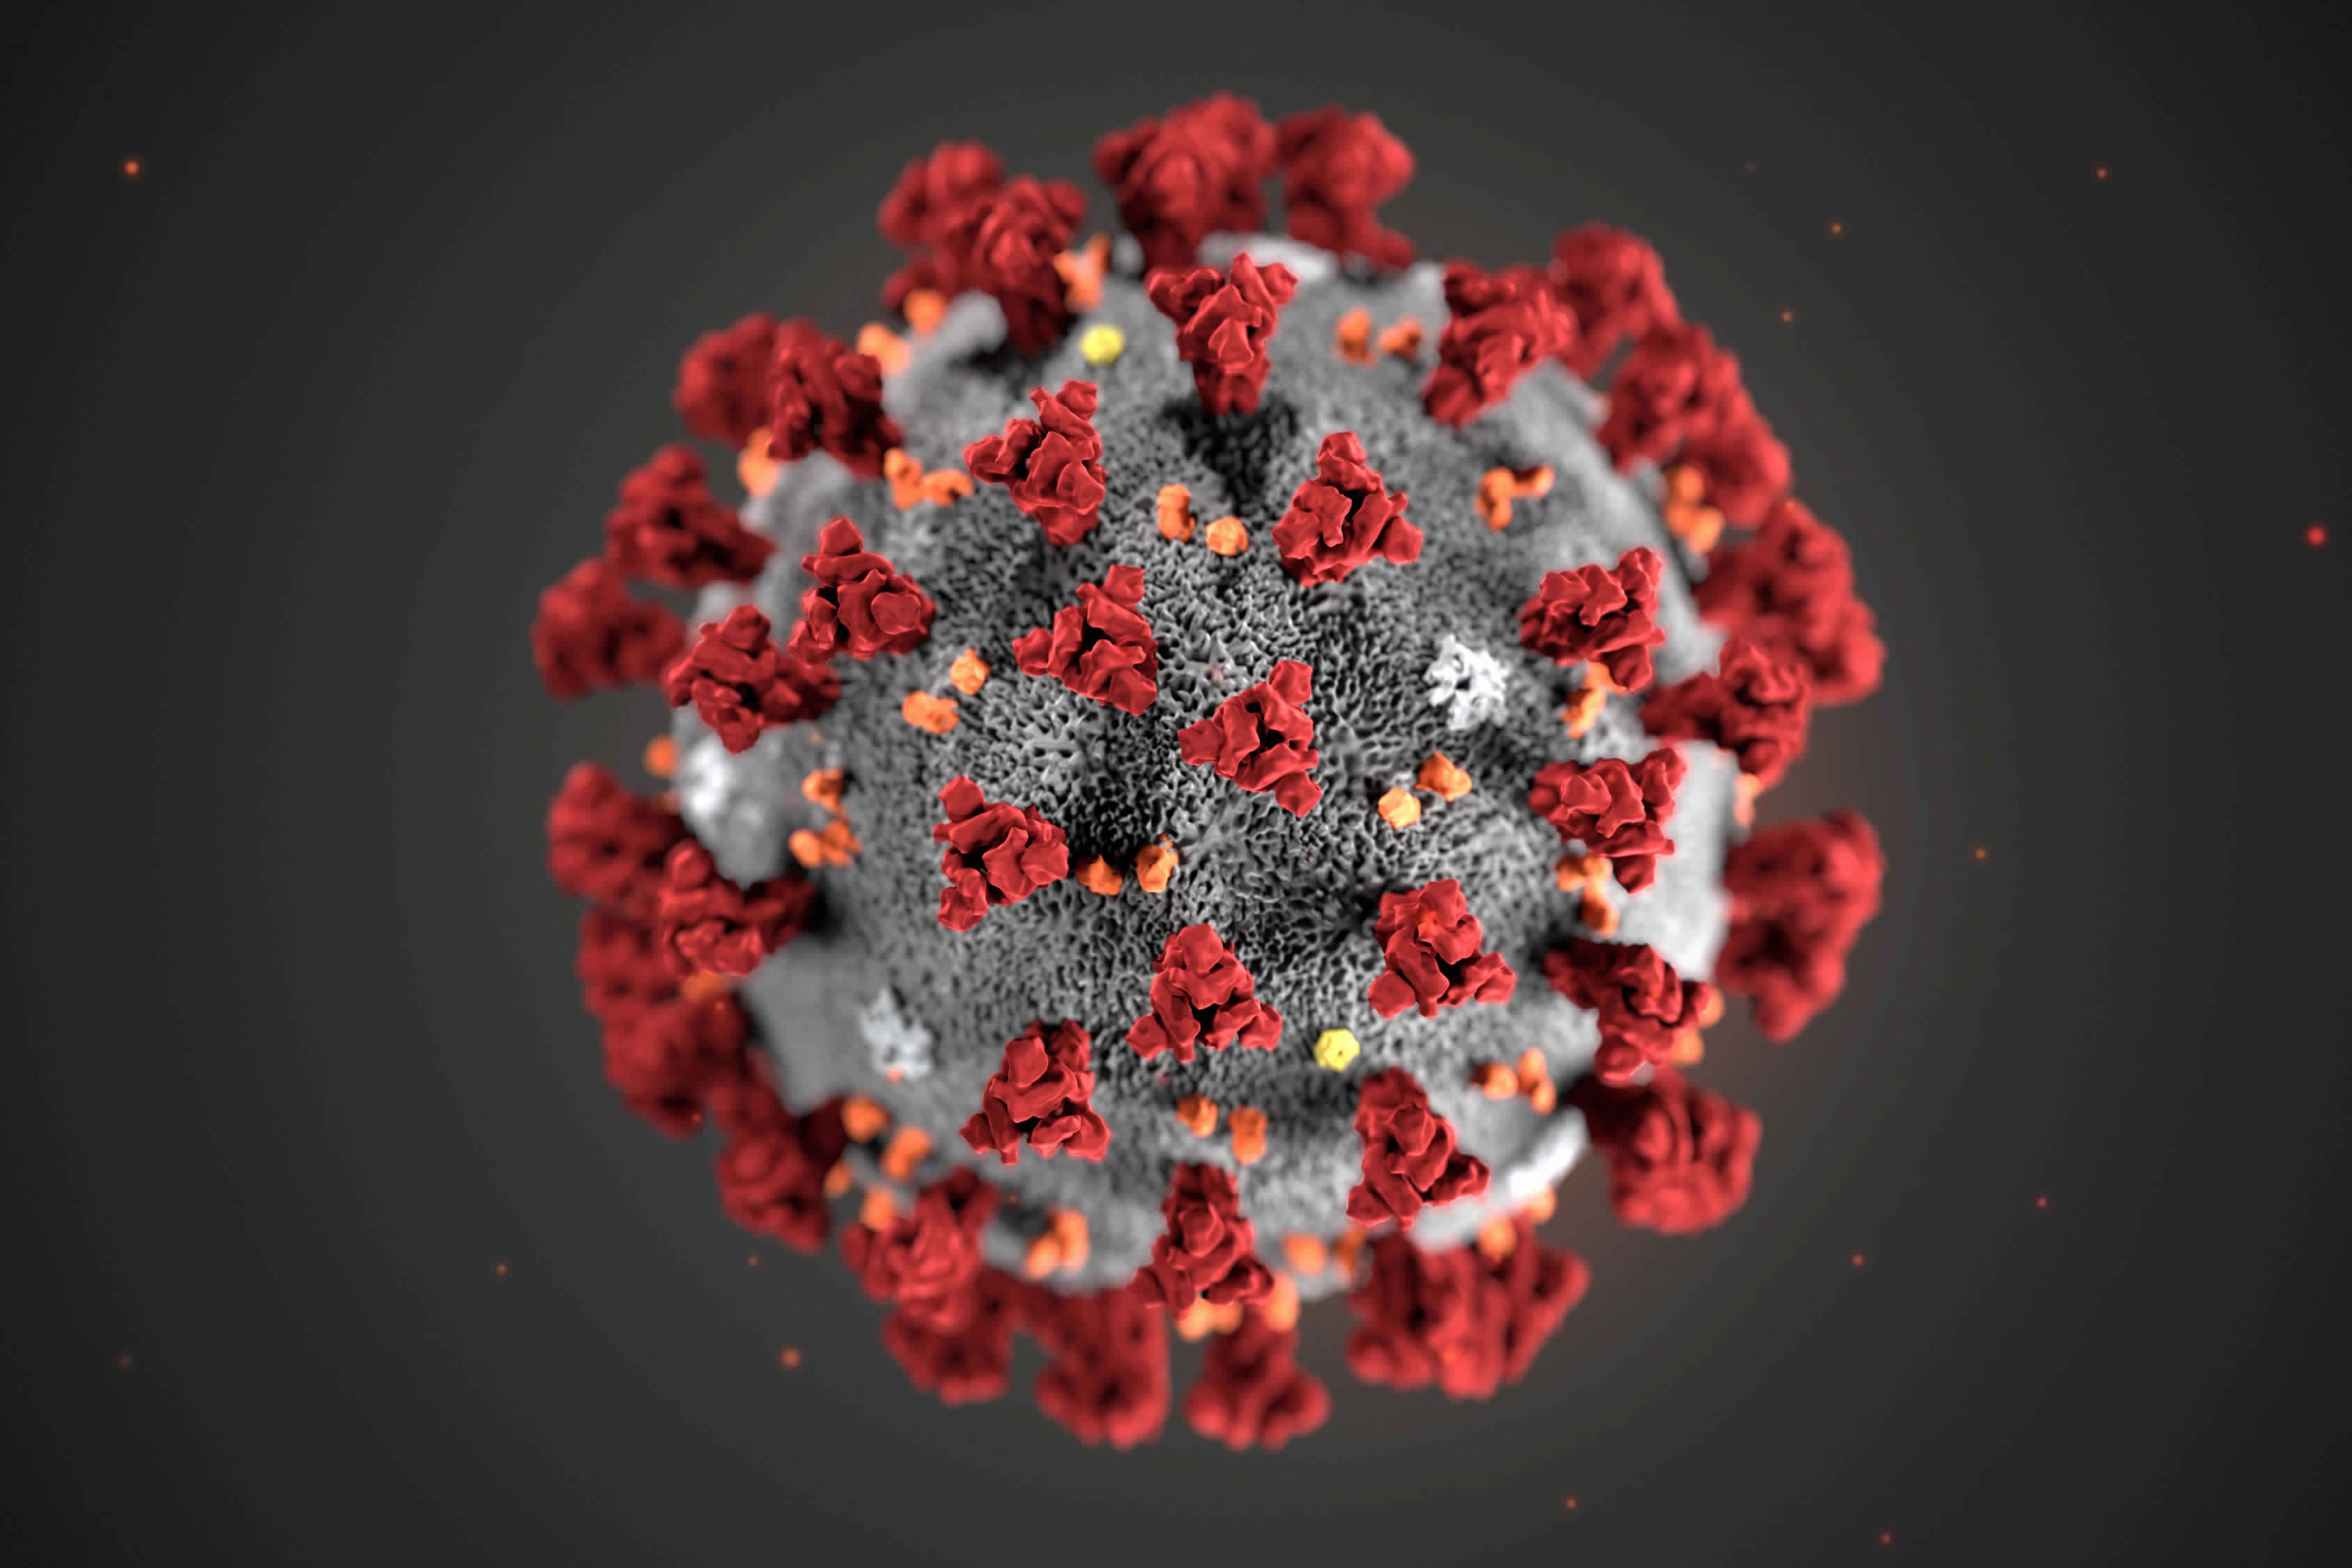 Nuevos descubrimientos: La variación genética entre humanos explicaría las distintas respuestas al coronavirus